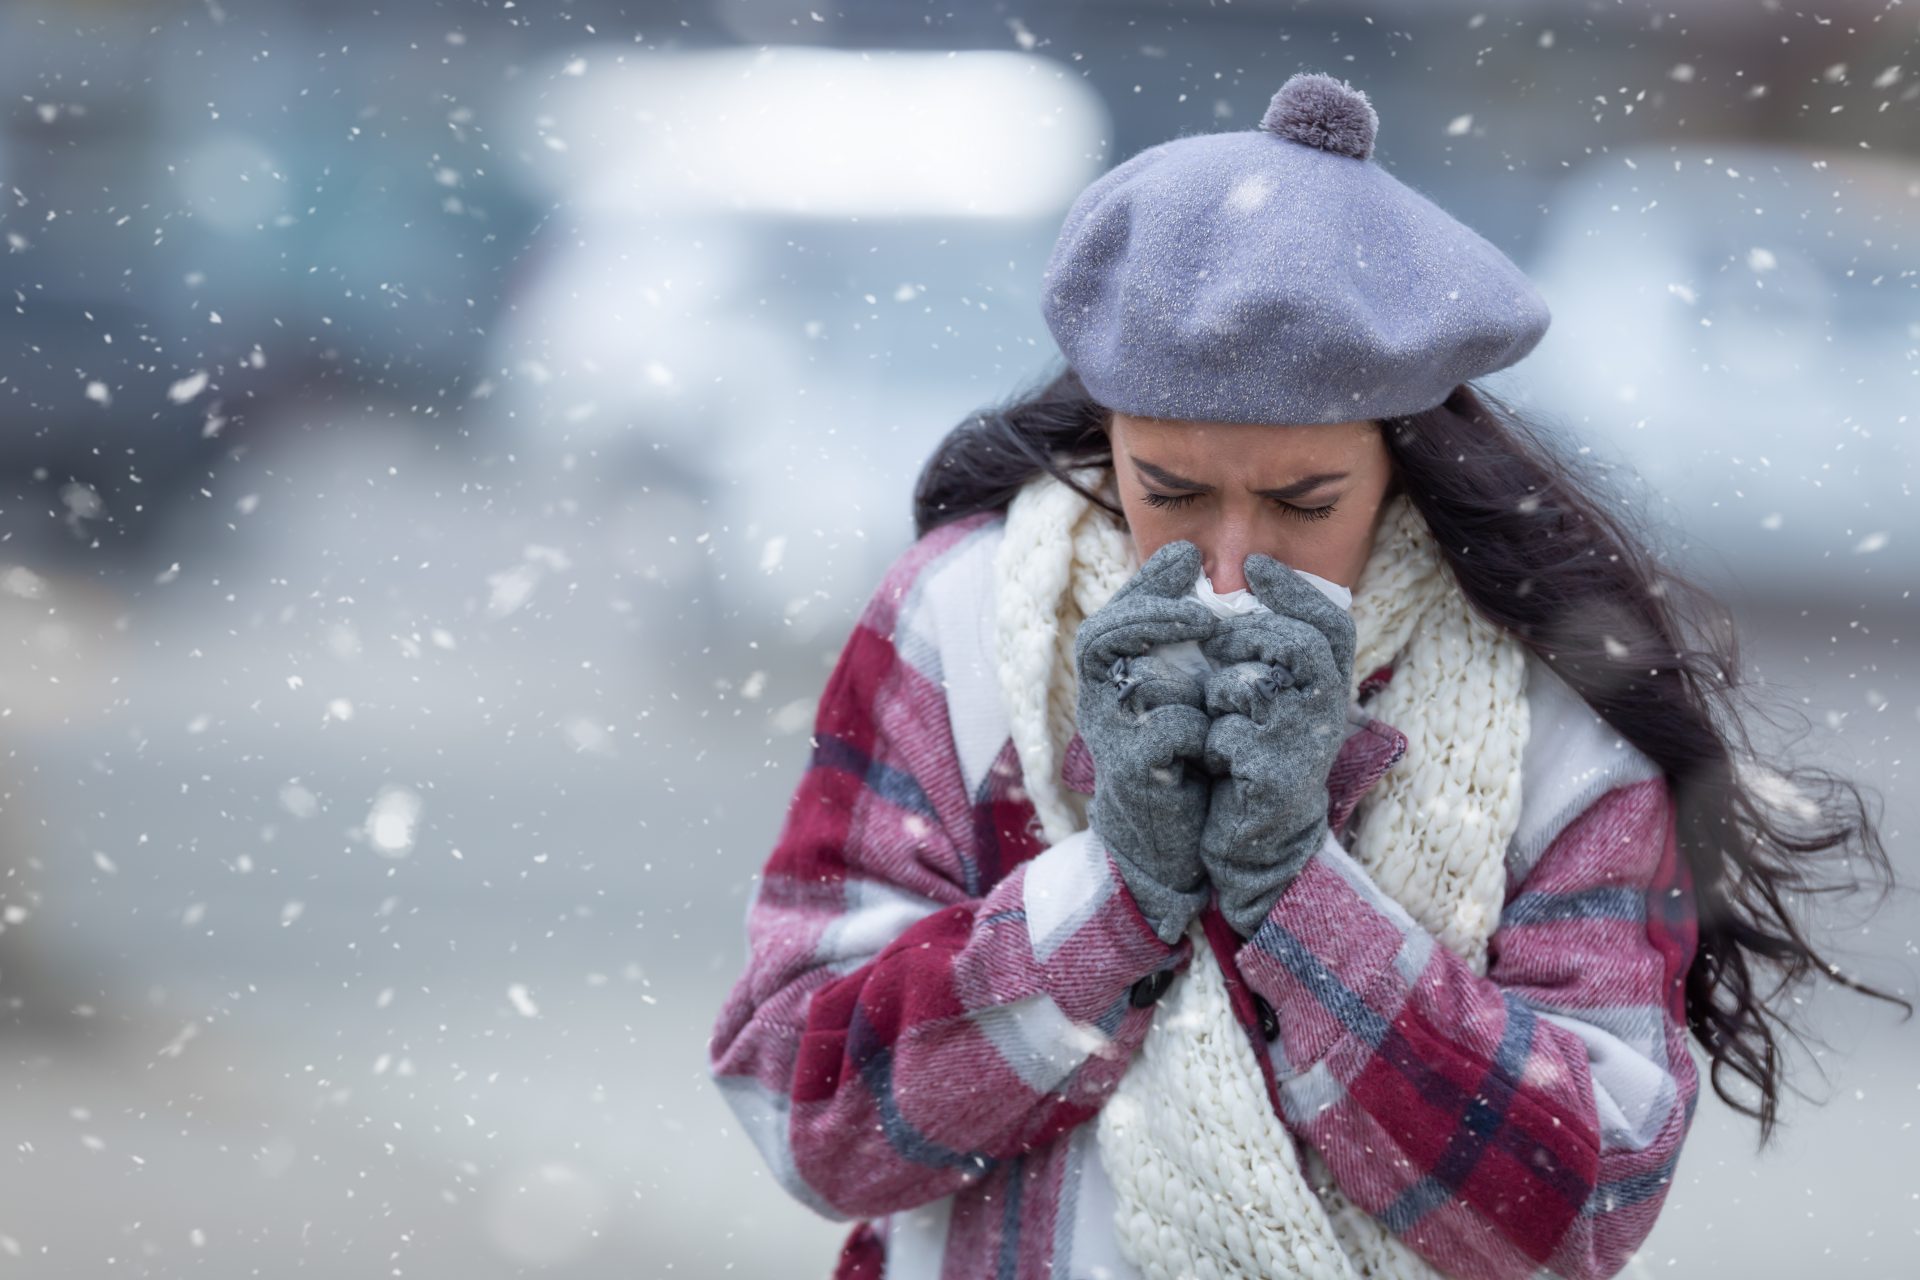 En hiver : quelles sont les précautions à prendre pour tenir éloignés les virus ?